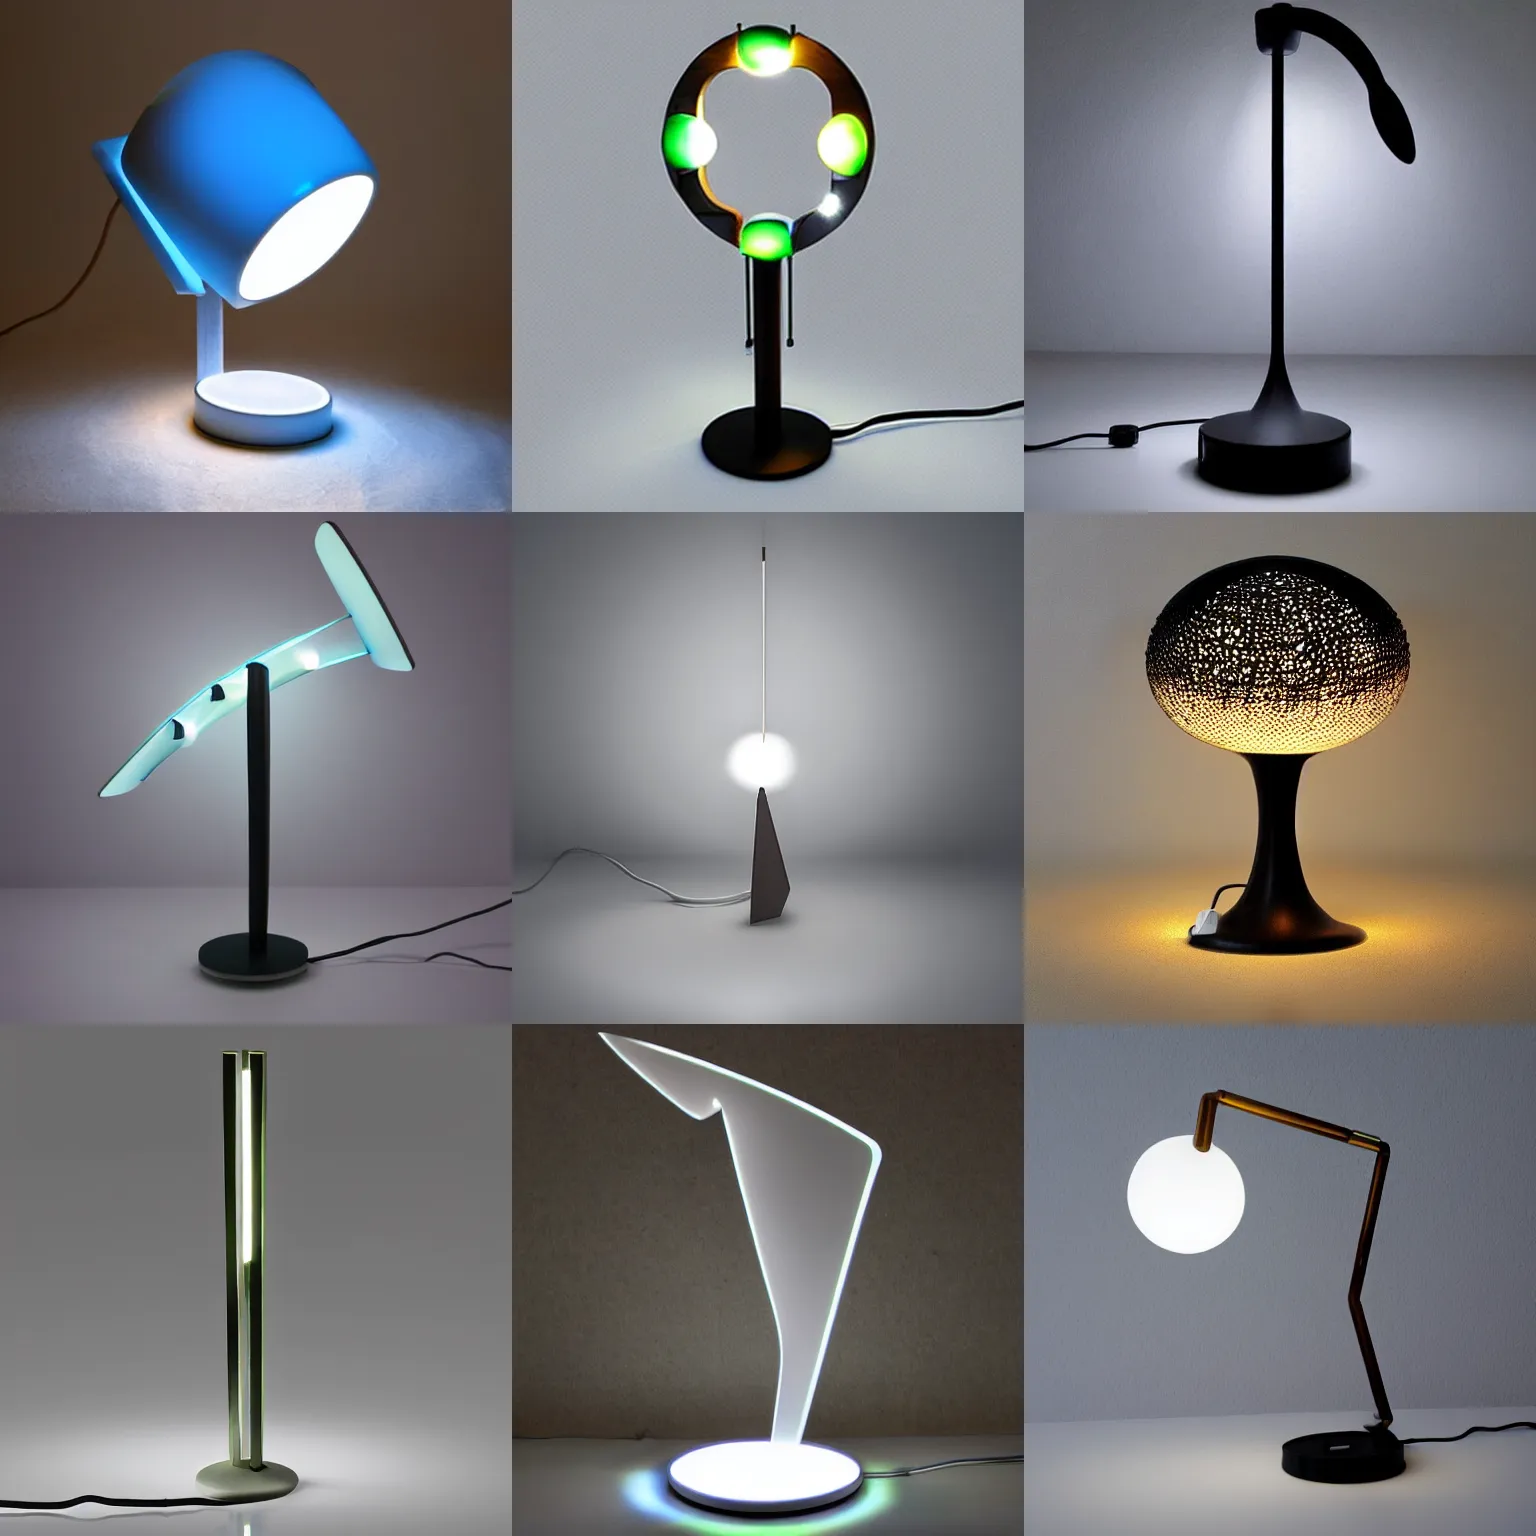 Prompt: futuristic lamp